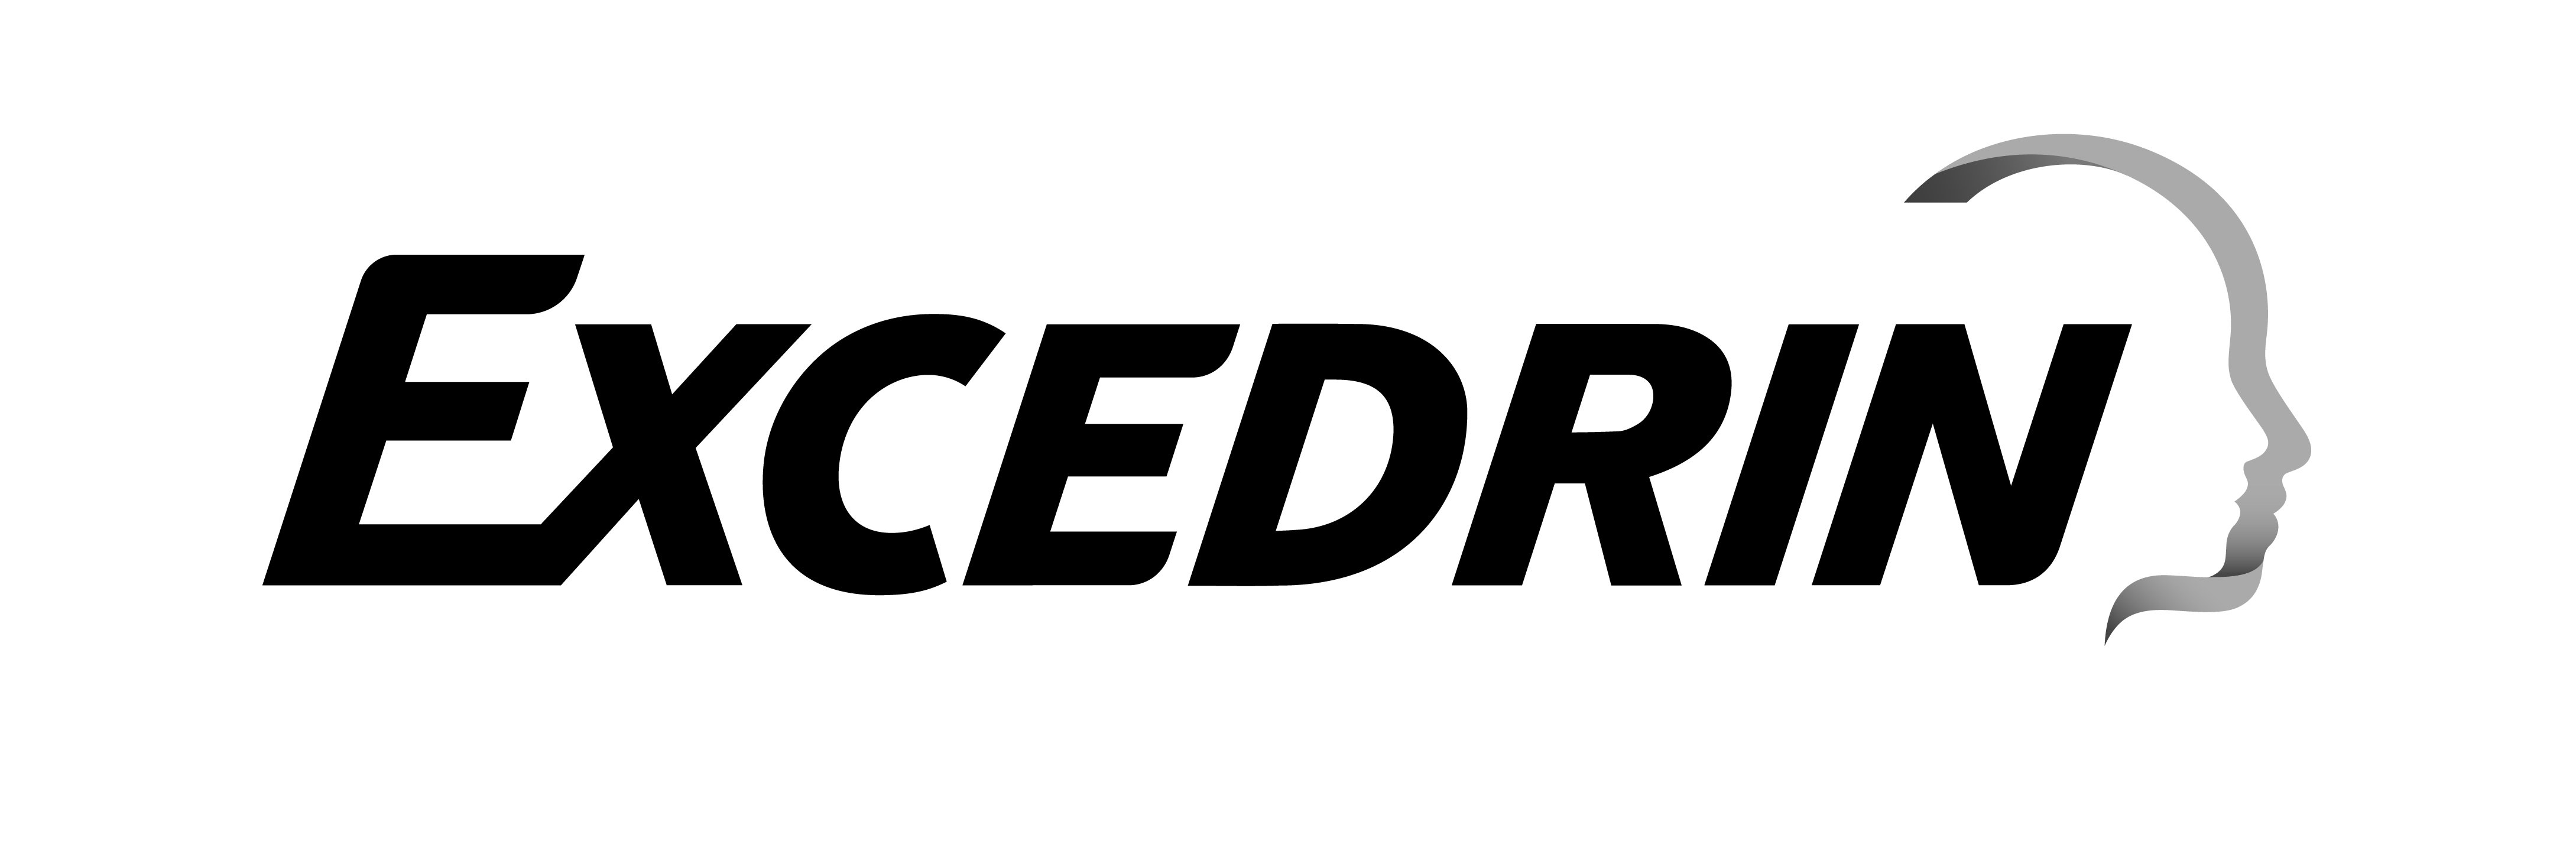 Trademark Logo EXCEDRIN